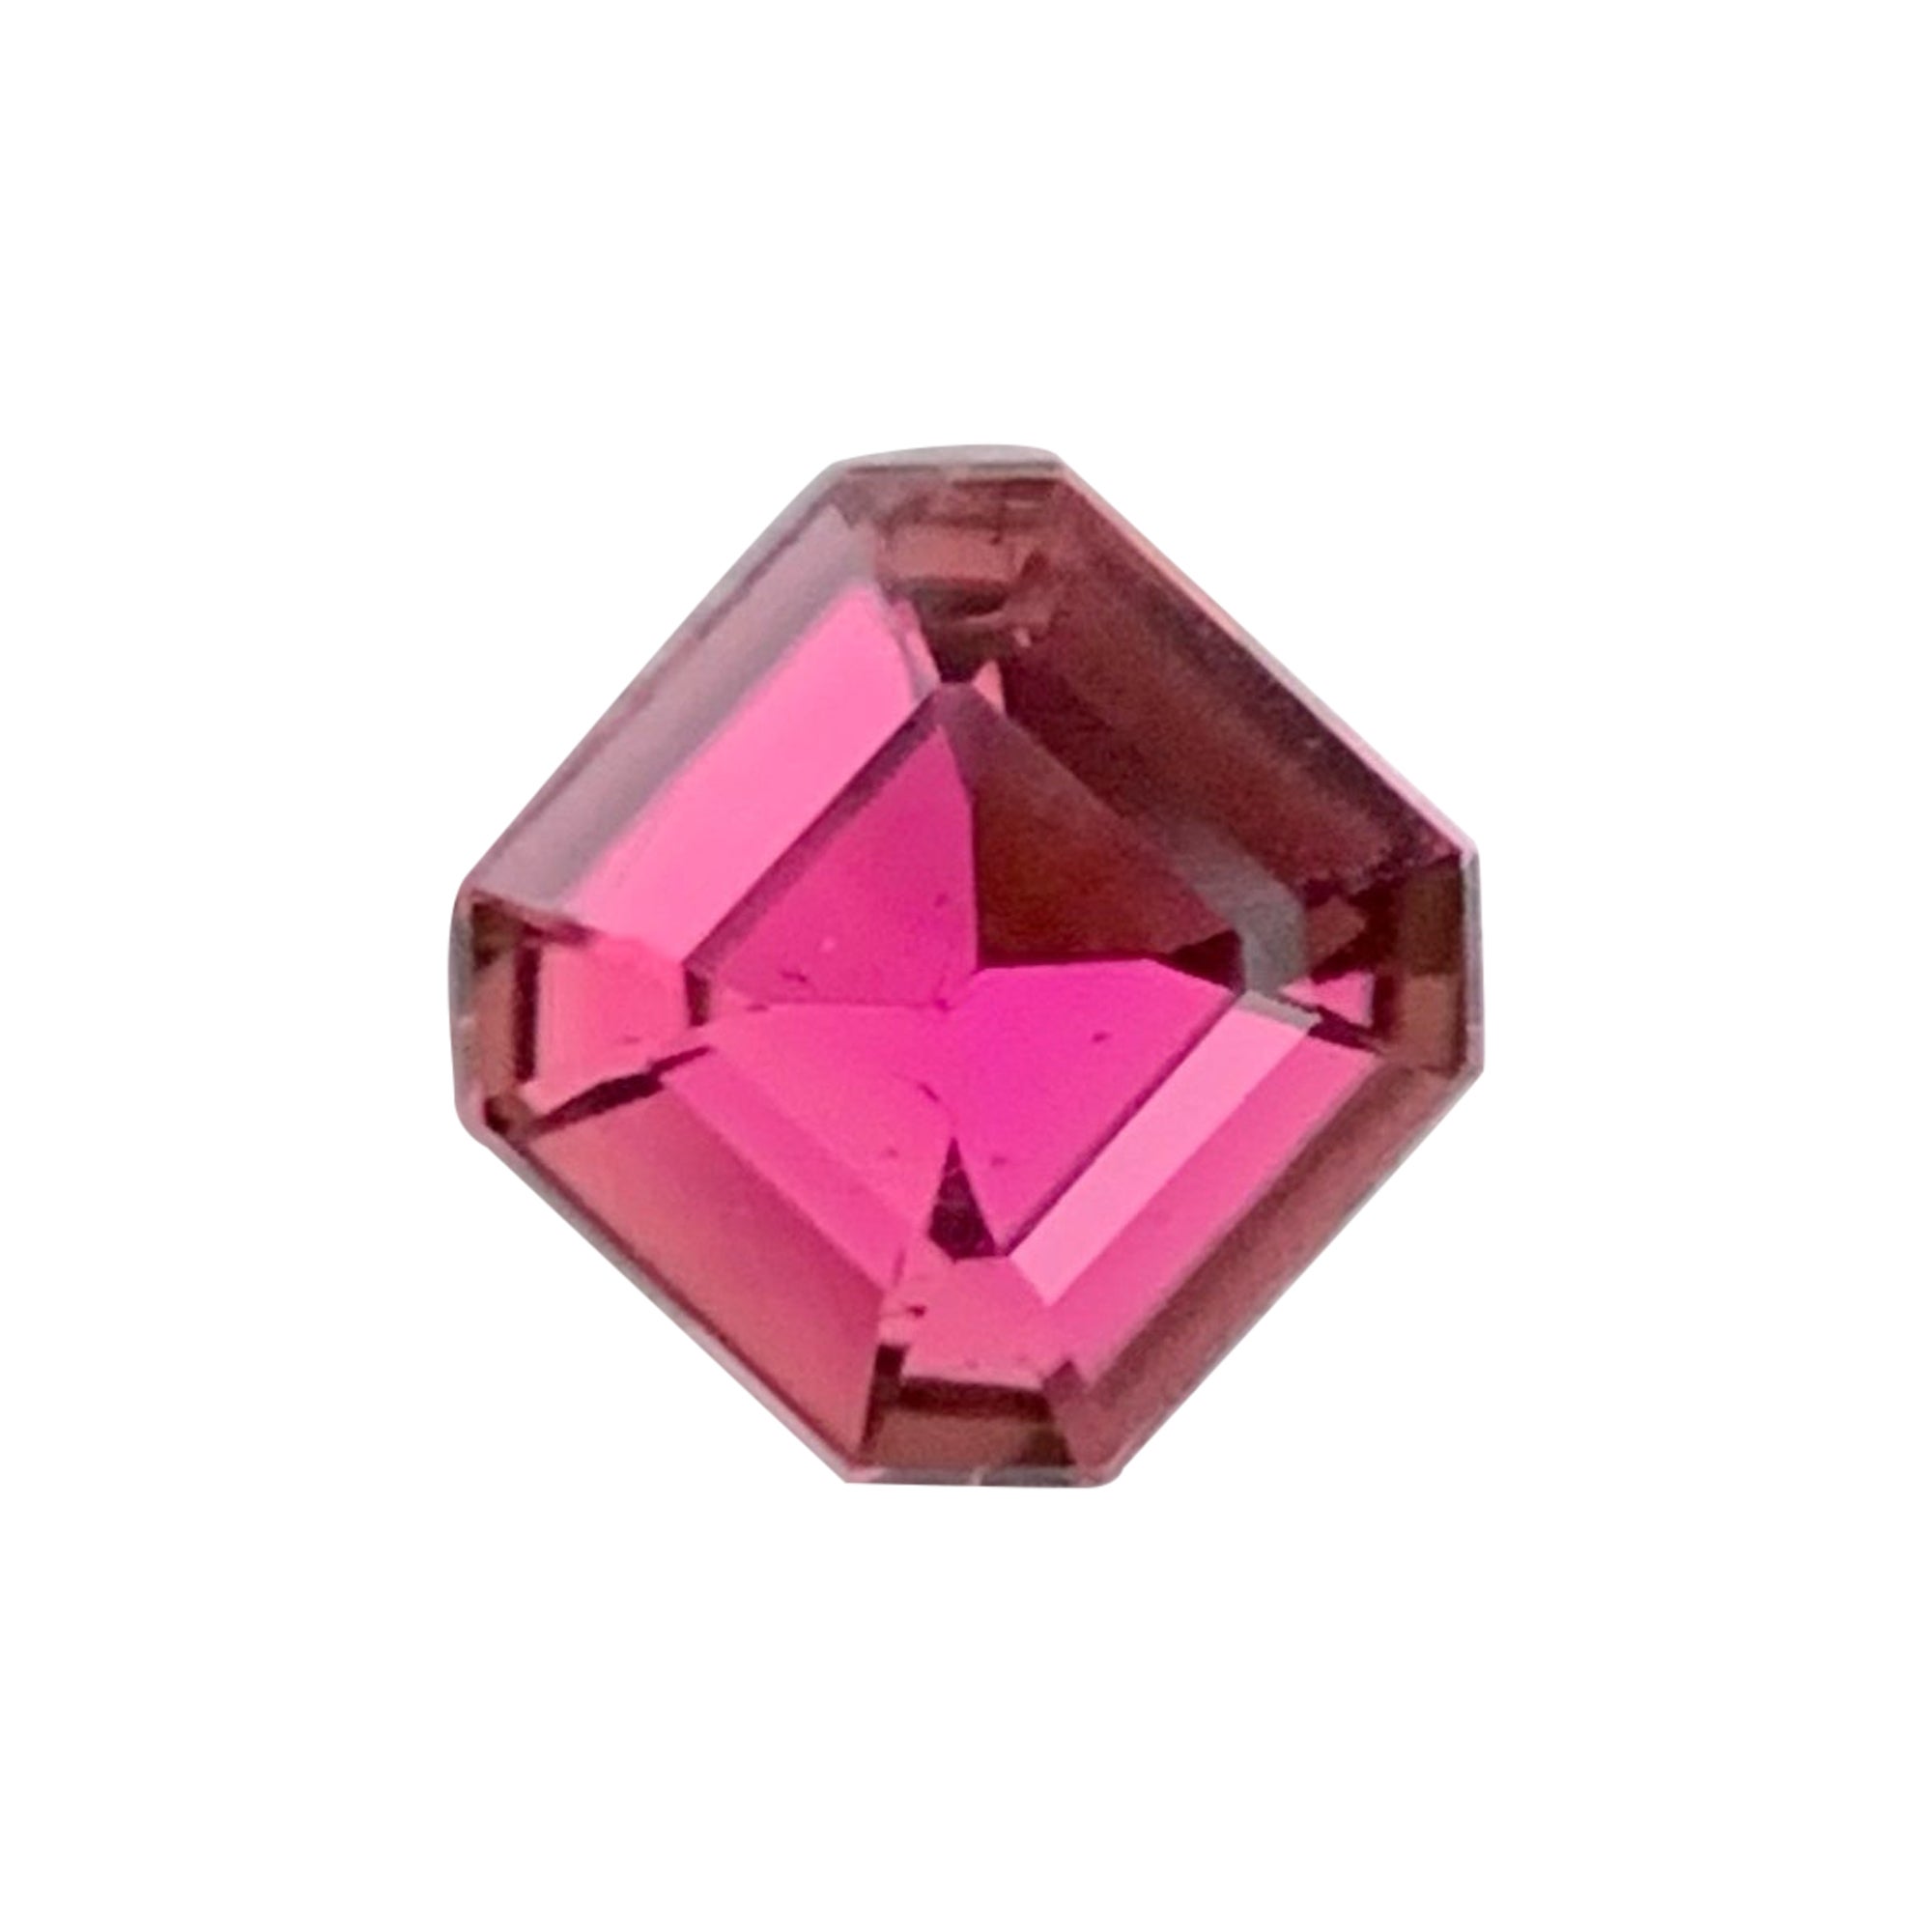 Magnifique tourmaline naturelle rose pâle de 1,30 carats, pierre précieuse pour bague